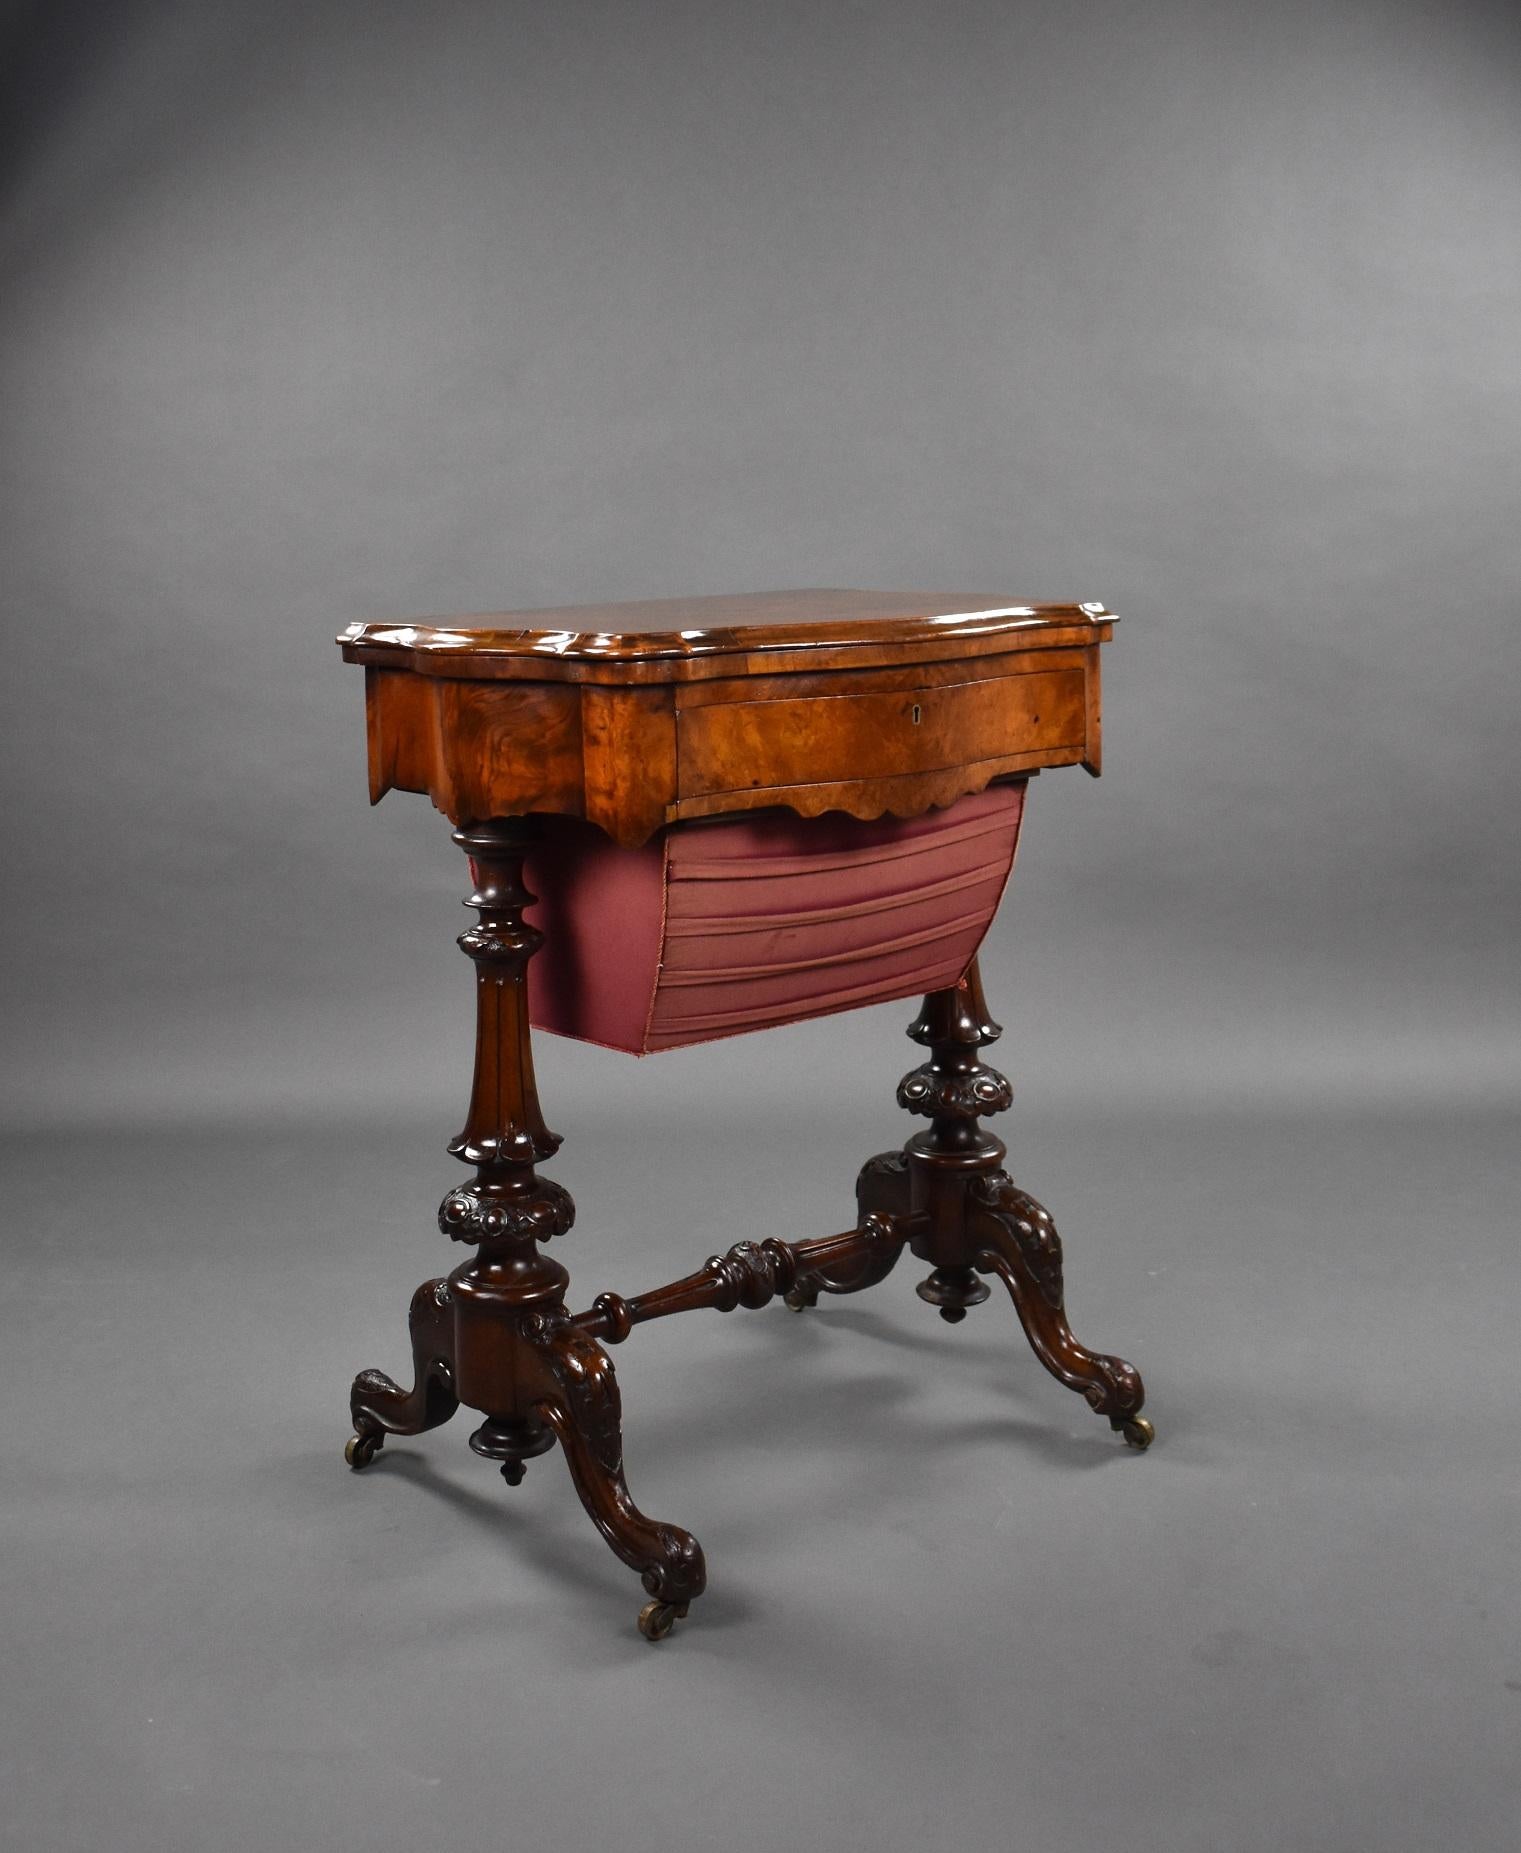 Eine gute Qualität viktorianischen Gratnussbaum Arbeitstisch / Spieltisch. Die Tischplatte ist dreh- und klappbar, so dass ein Schach- und ein Backgammonbrett zum Vorschein kommen. Darunter befindet sich eine Einbau-Schublade, darüber ein